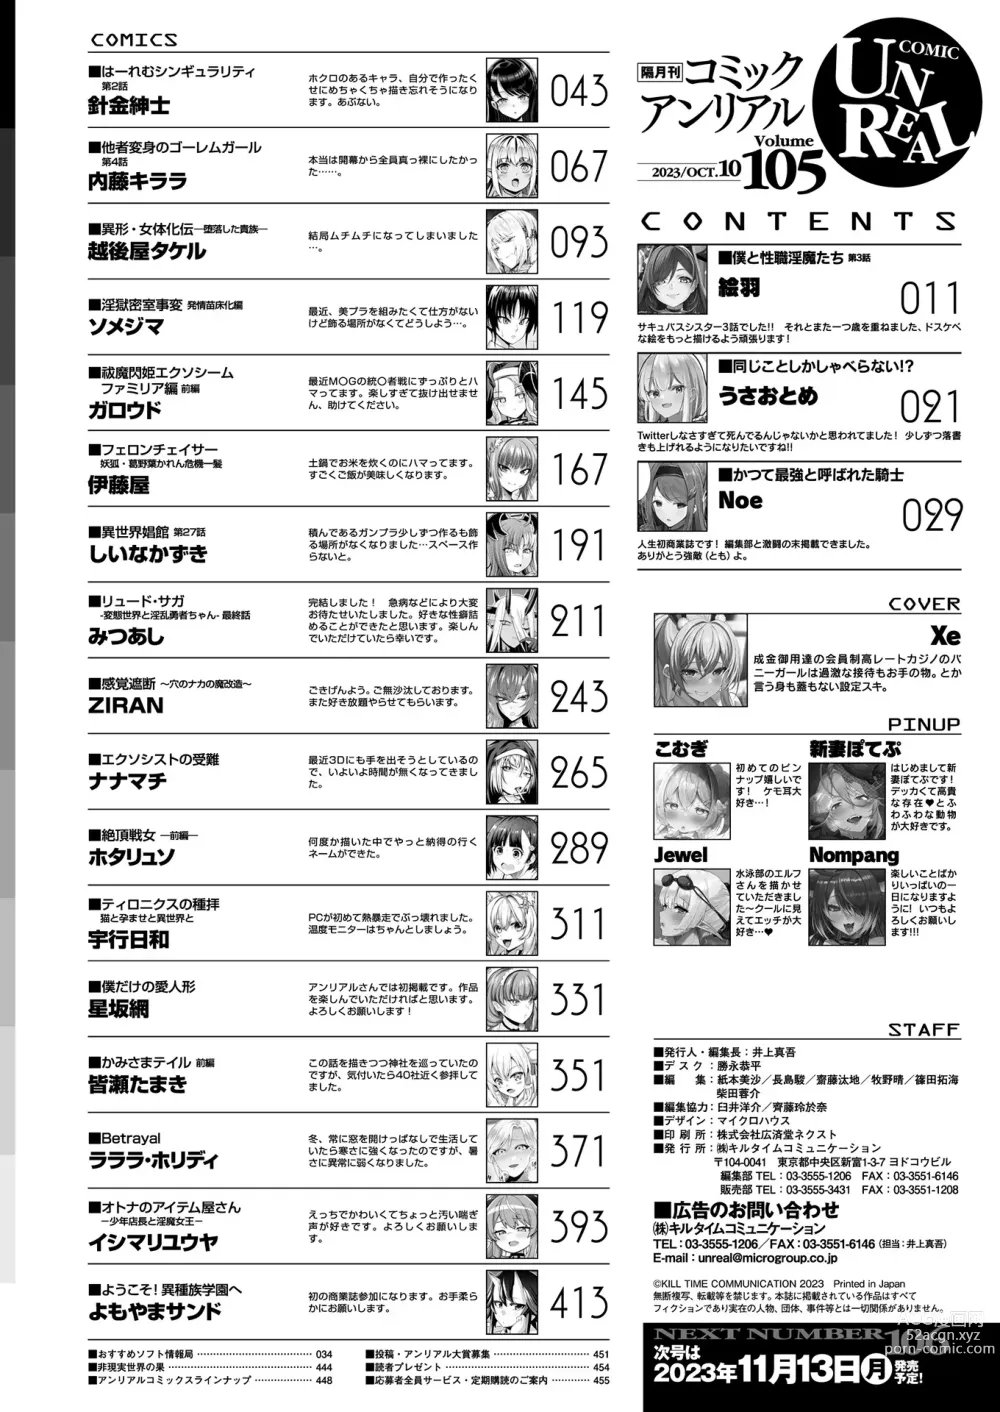 Page 450 of manga COMIC Unreal 2023-10 Vol. 105